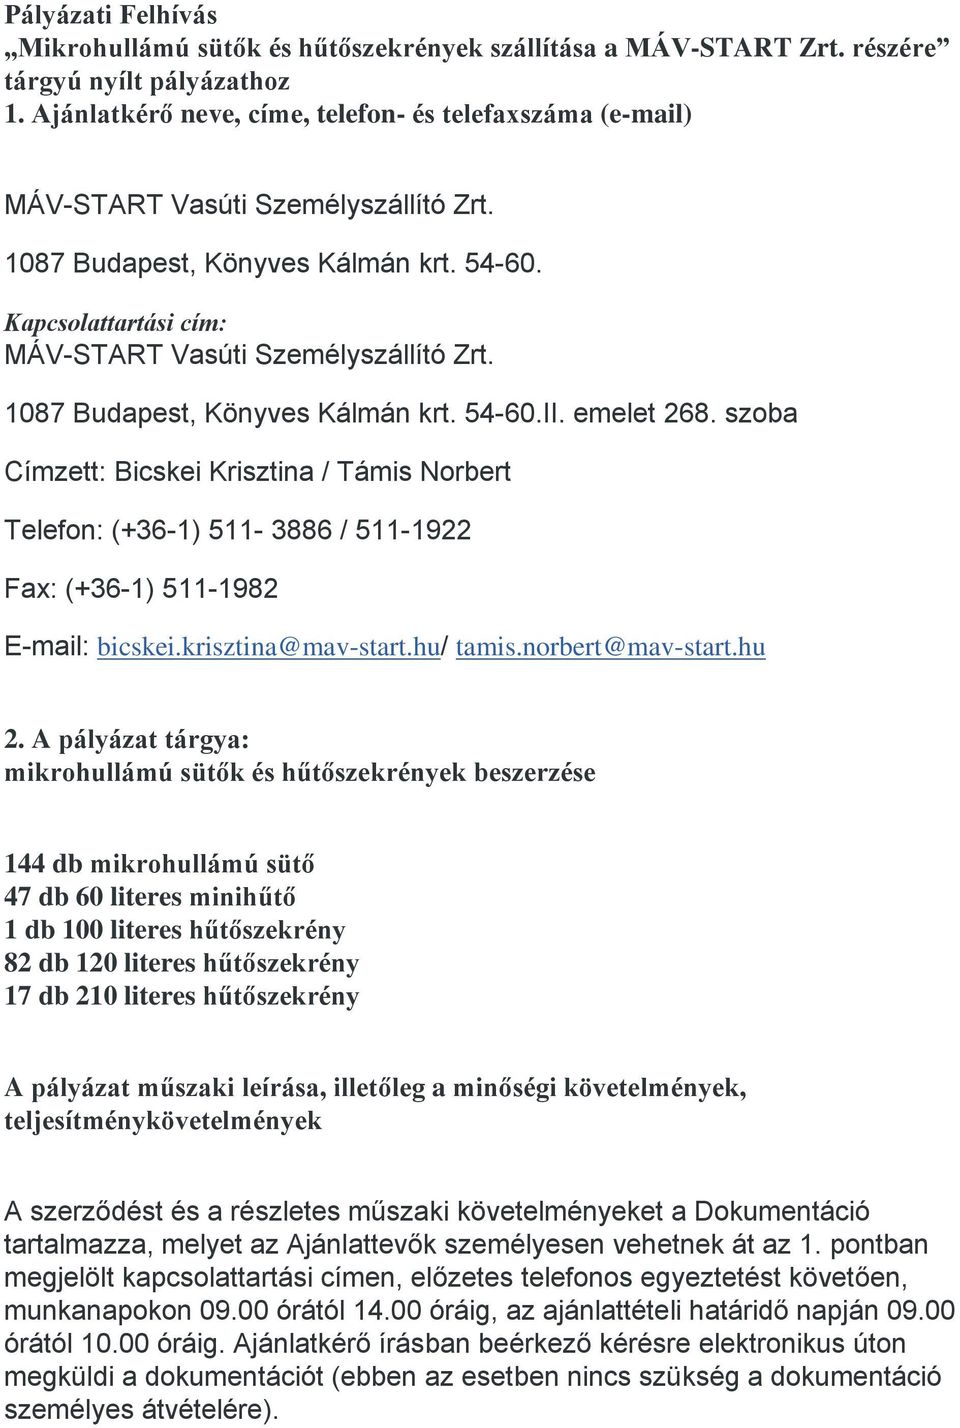 1087 Budapest, Könyves Kálmán krt. 54-60.II. emelet 268. szoba Címzett: Bicskei Krisztina / Támis Norbert Telefon: (+36-1) 511-3886 / 511-1922 Fax: (+36-1) 511-1982 E-mail: bicskei.